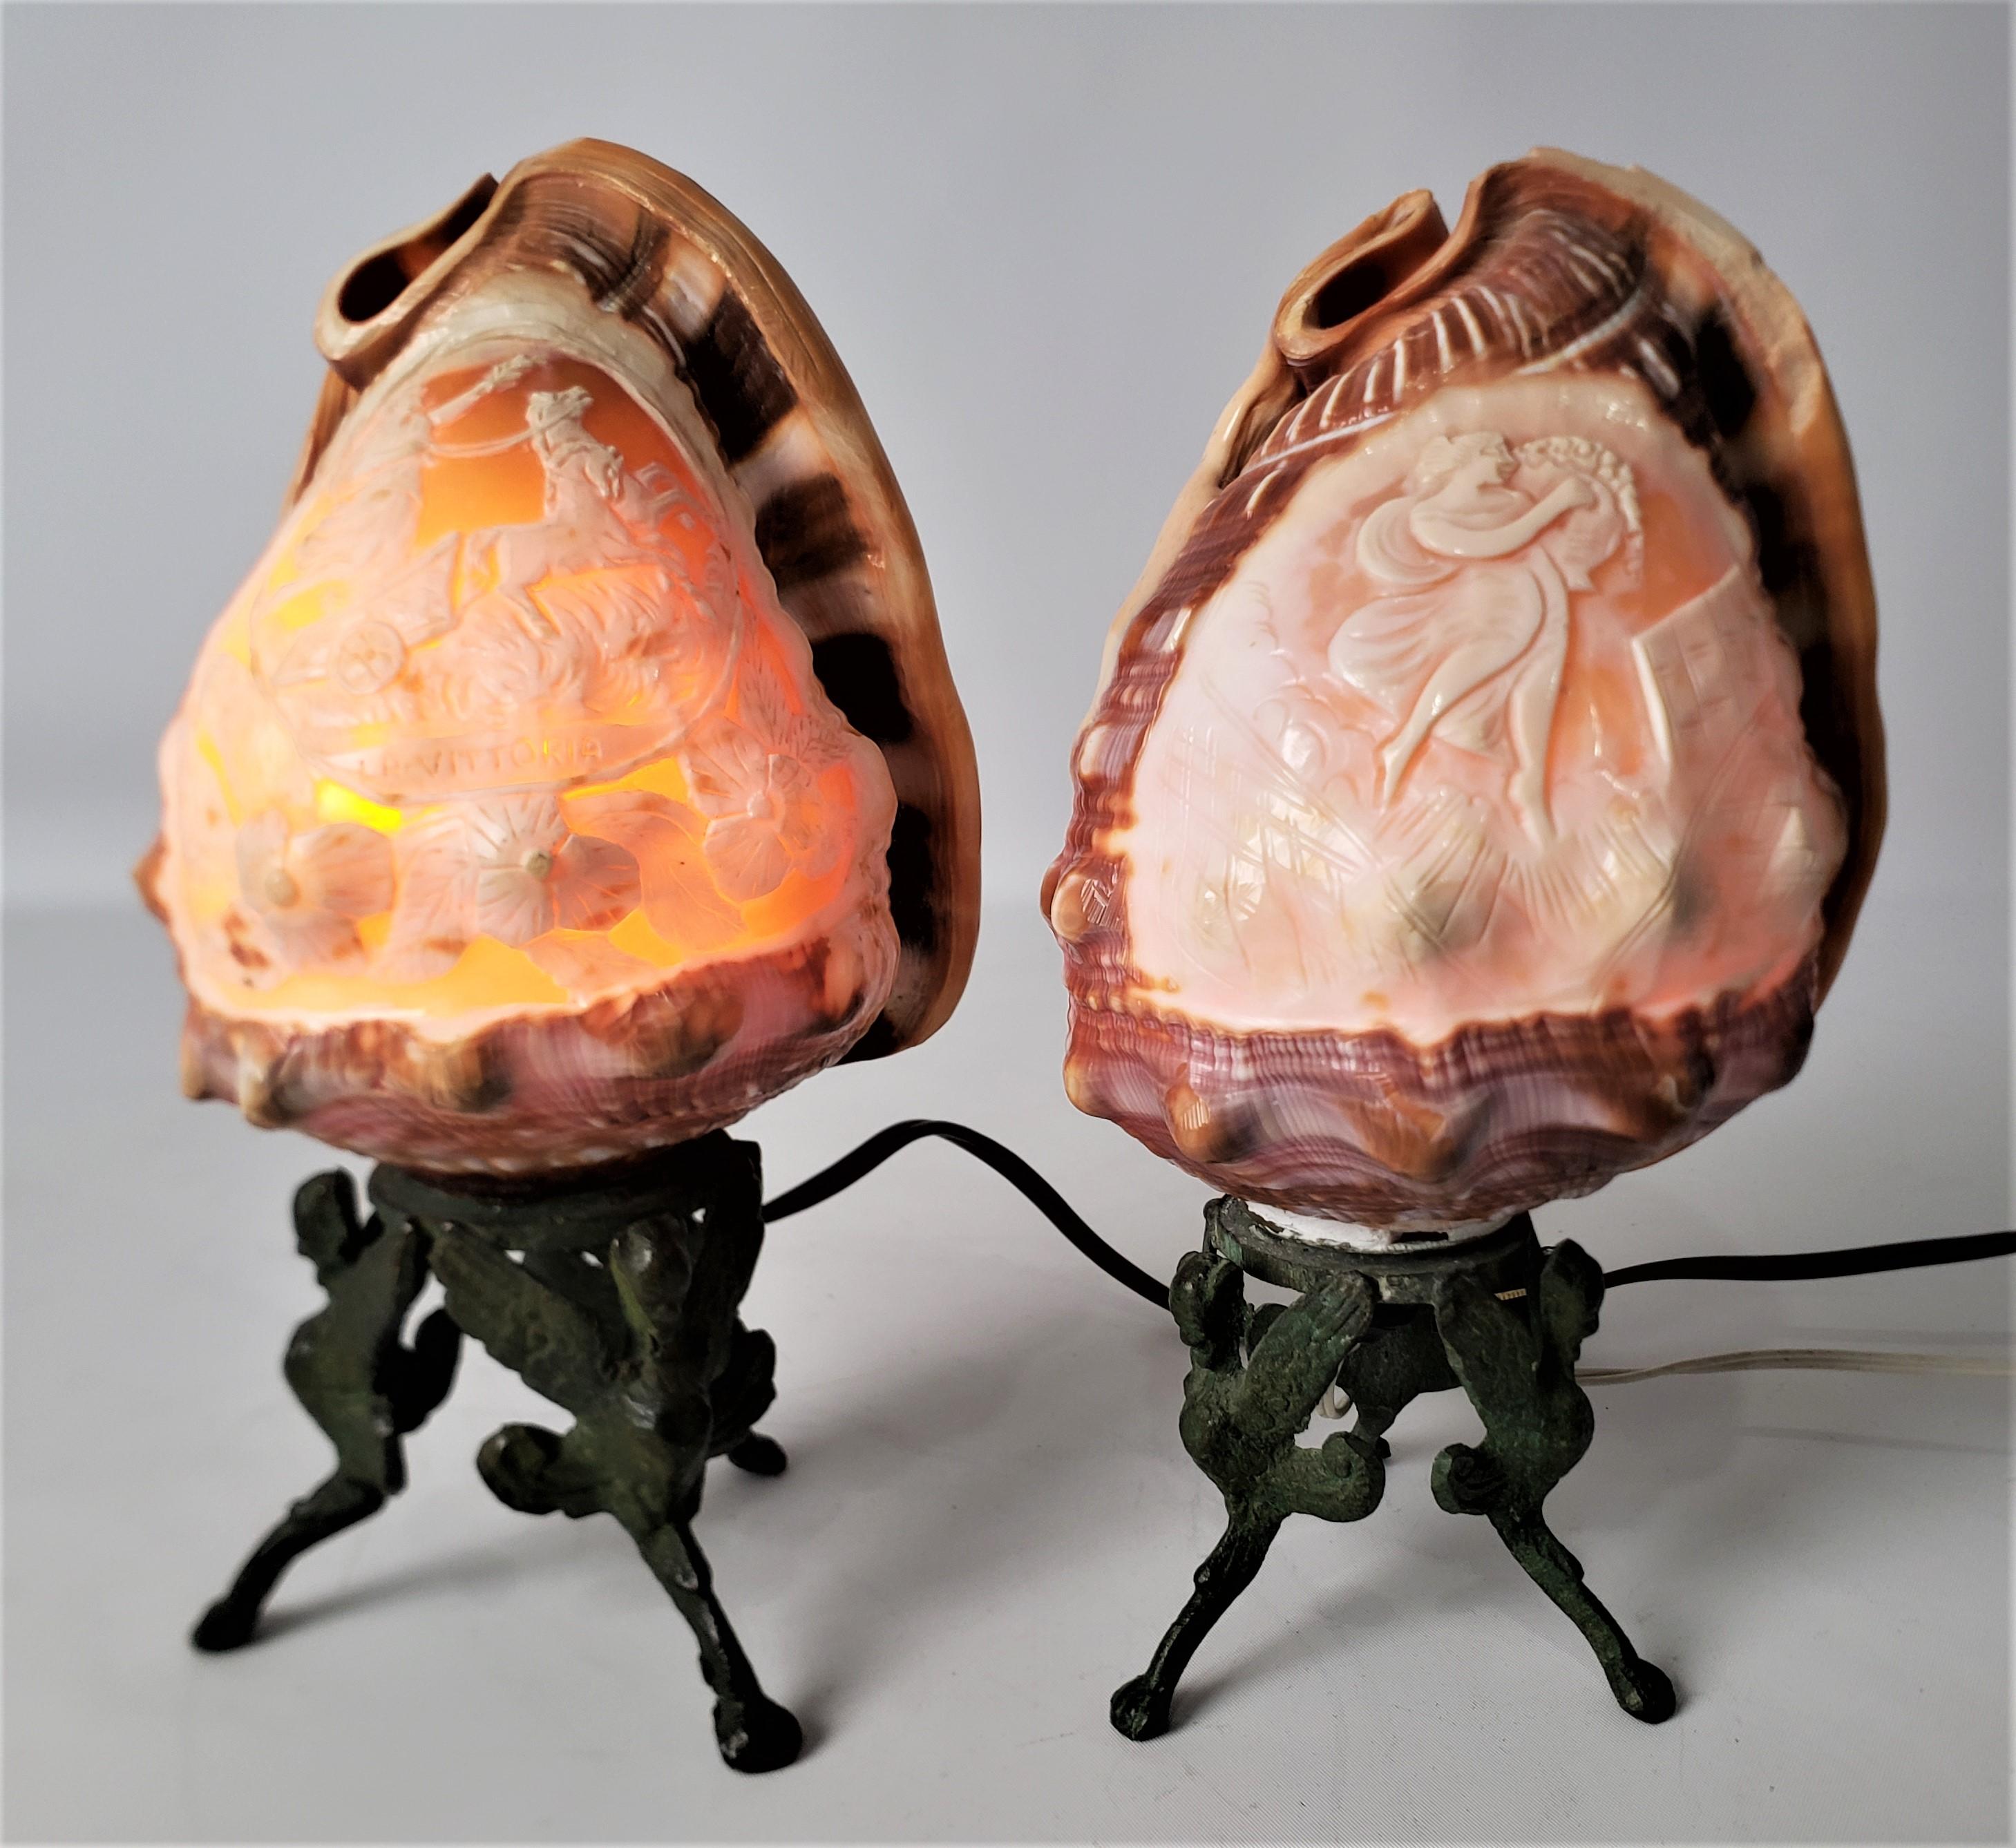 Ces lampes d'appoint anciennes en forme de coquillage sculpté ne sont pas signées, mais on présume qu'elles proviennent d'Italie et qu'elles datent d'environ 1920. Elles sont réalisées dans un style néo-Renaissance. Les lampes sont des coquillages